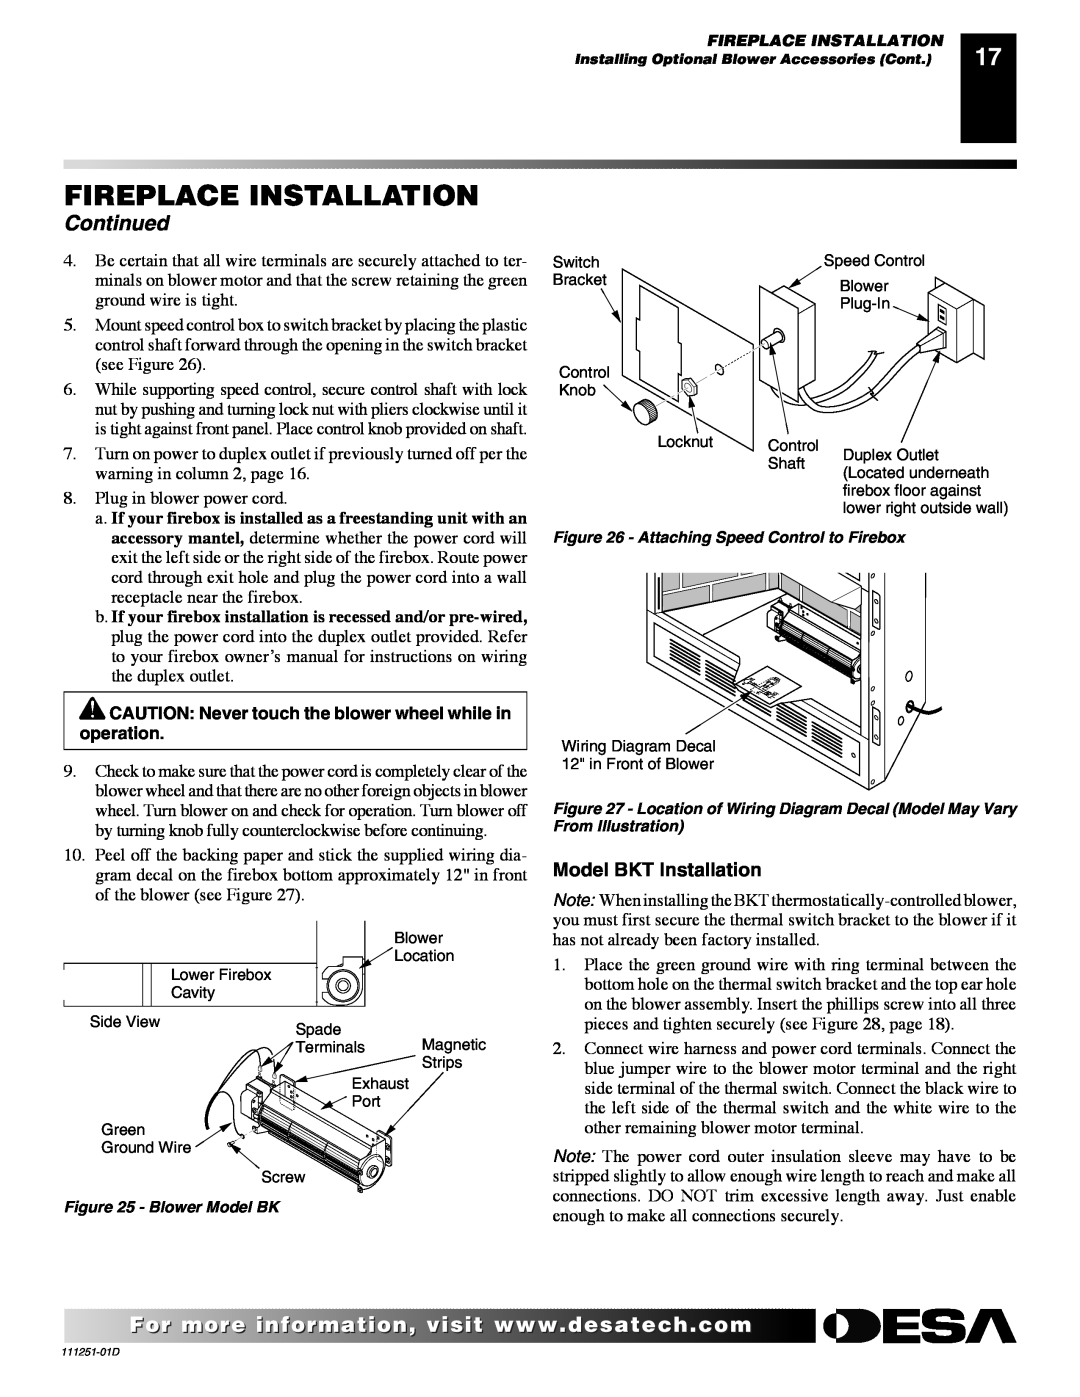 Desa (V)T36ENA SERIES, (V)T36EPA SERIES installation manual Fireplace Installation, Continued, Model BKT Installation 